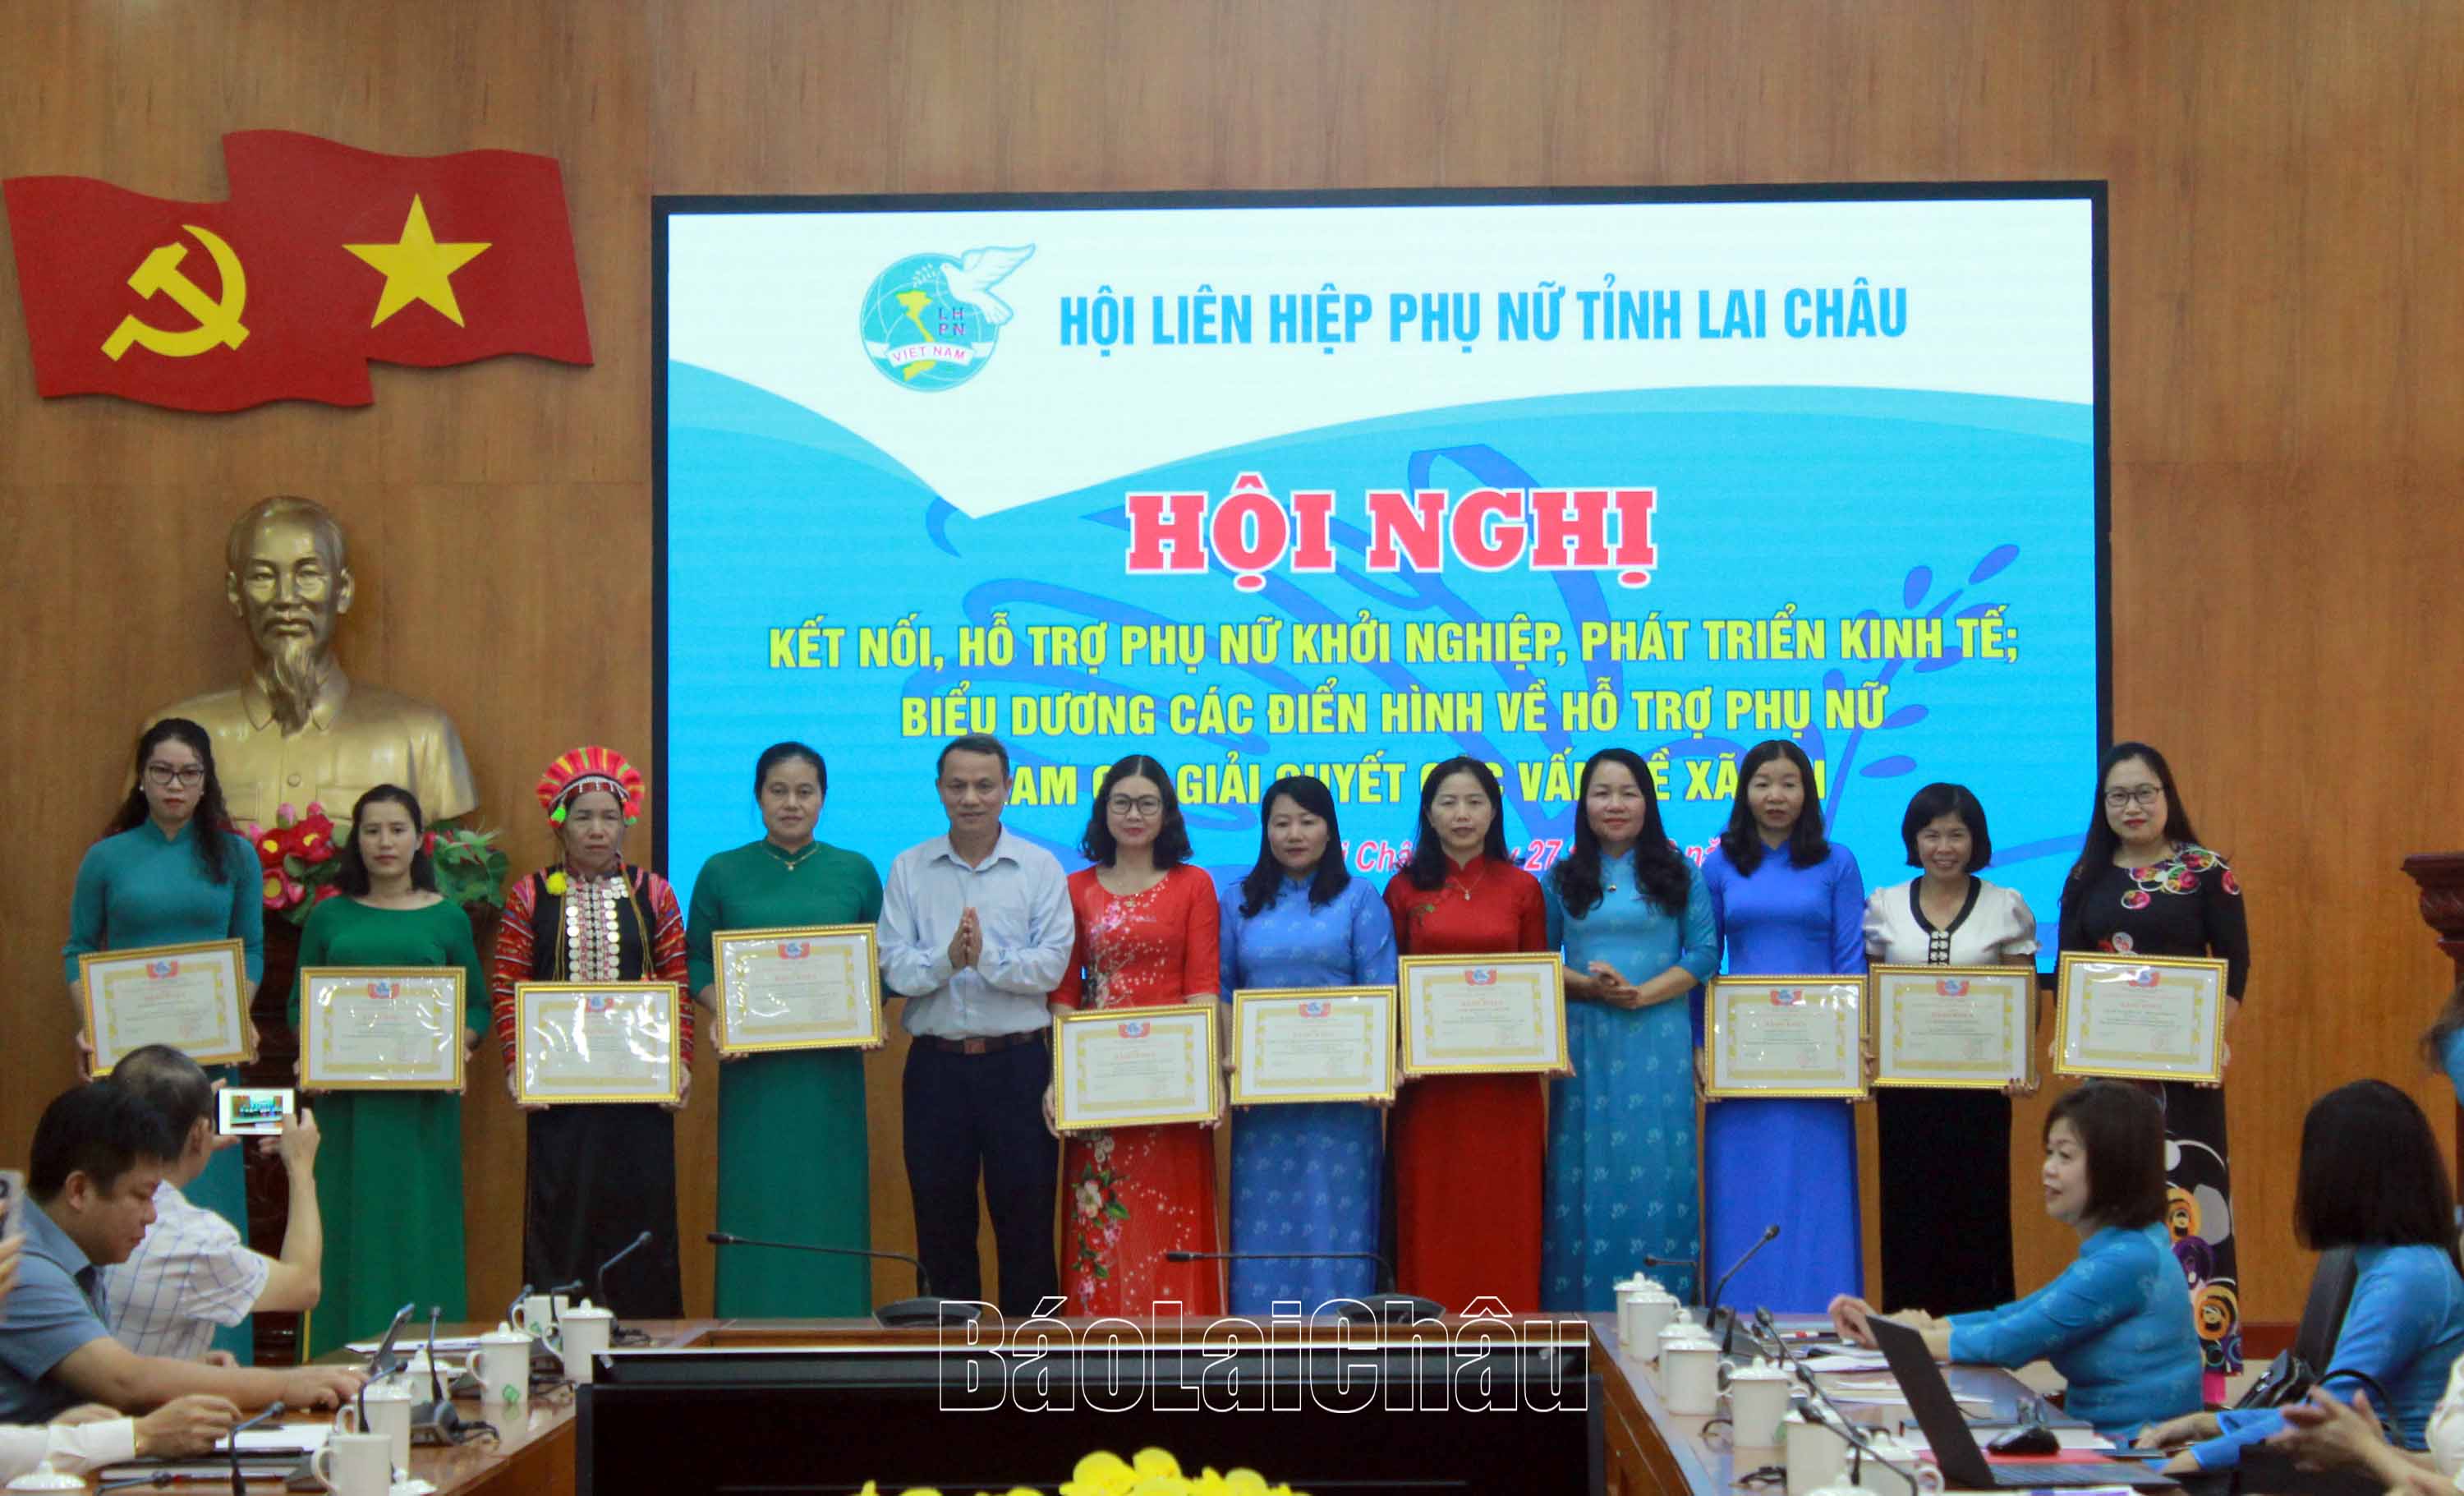 Đại diện lãnh đạo Ban Tuyên giáo Tỉnh ủy, Hội LHPN tỉnh tặng Bằng khen cho các tập thể có thành tích xuất sắc trong thực hiện mô hình Hỗ trợ phụ nữ giải quyết các vấn đề xã hội liên quan giai đoạn 2017 - 2022”.